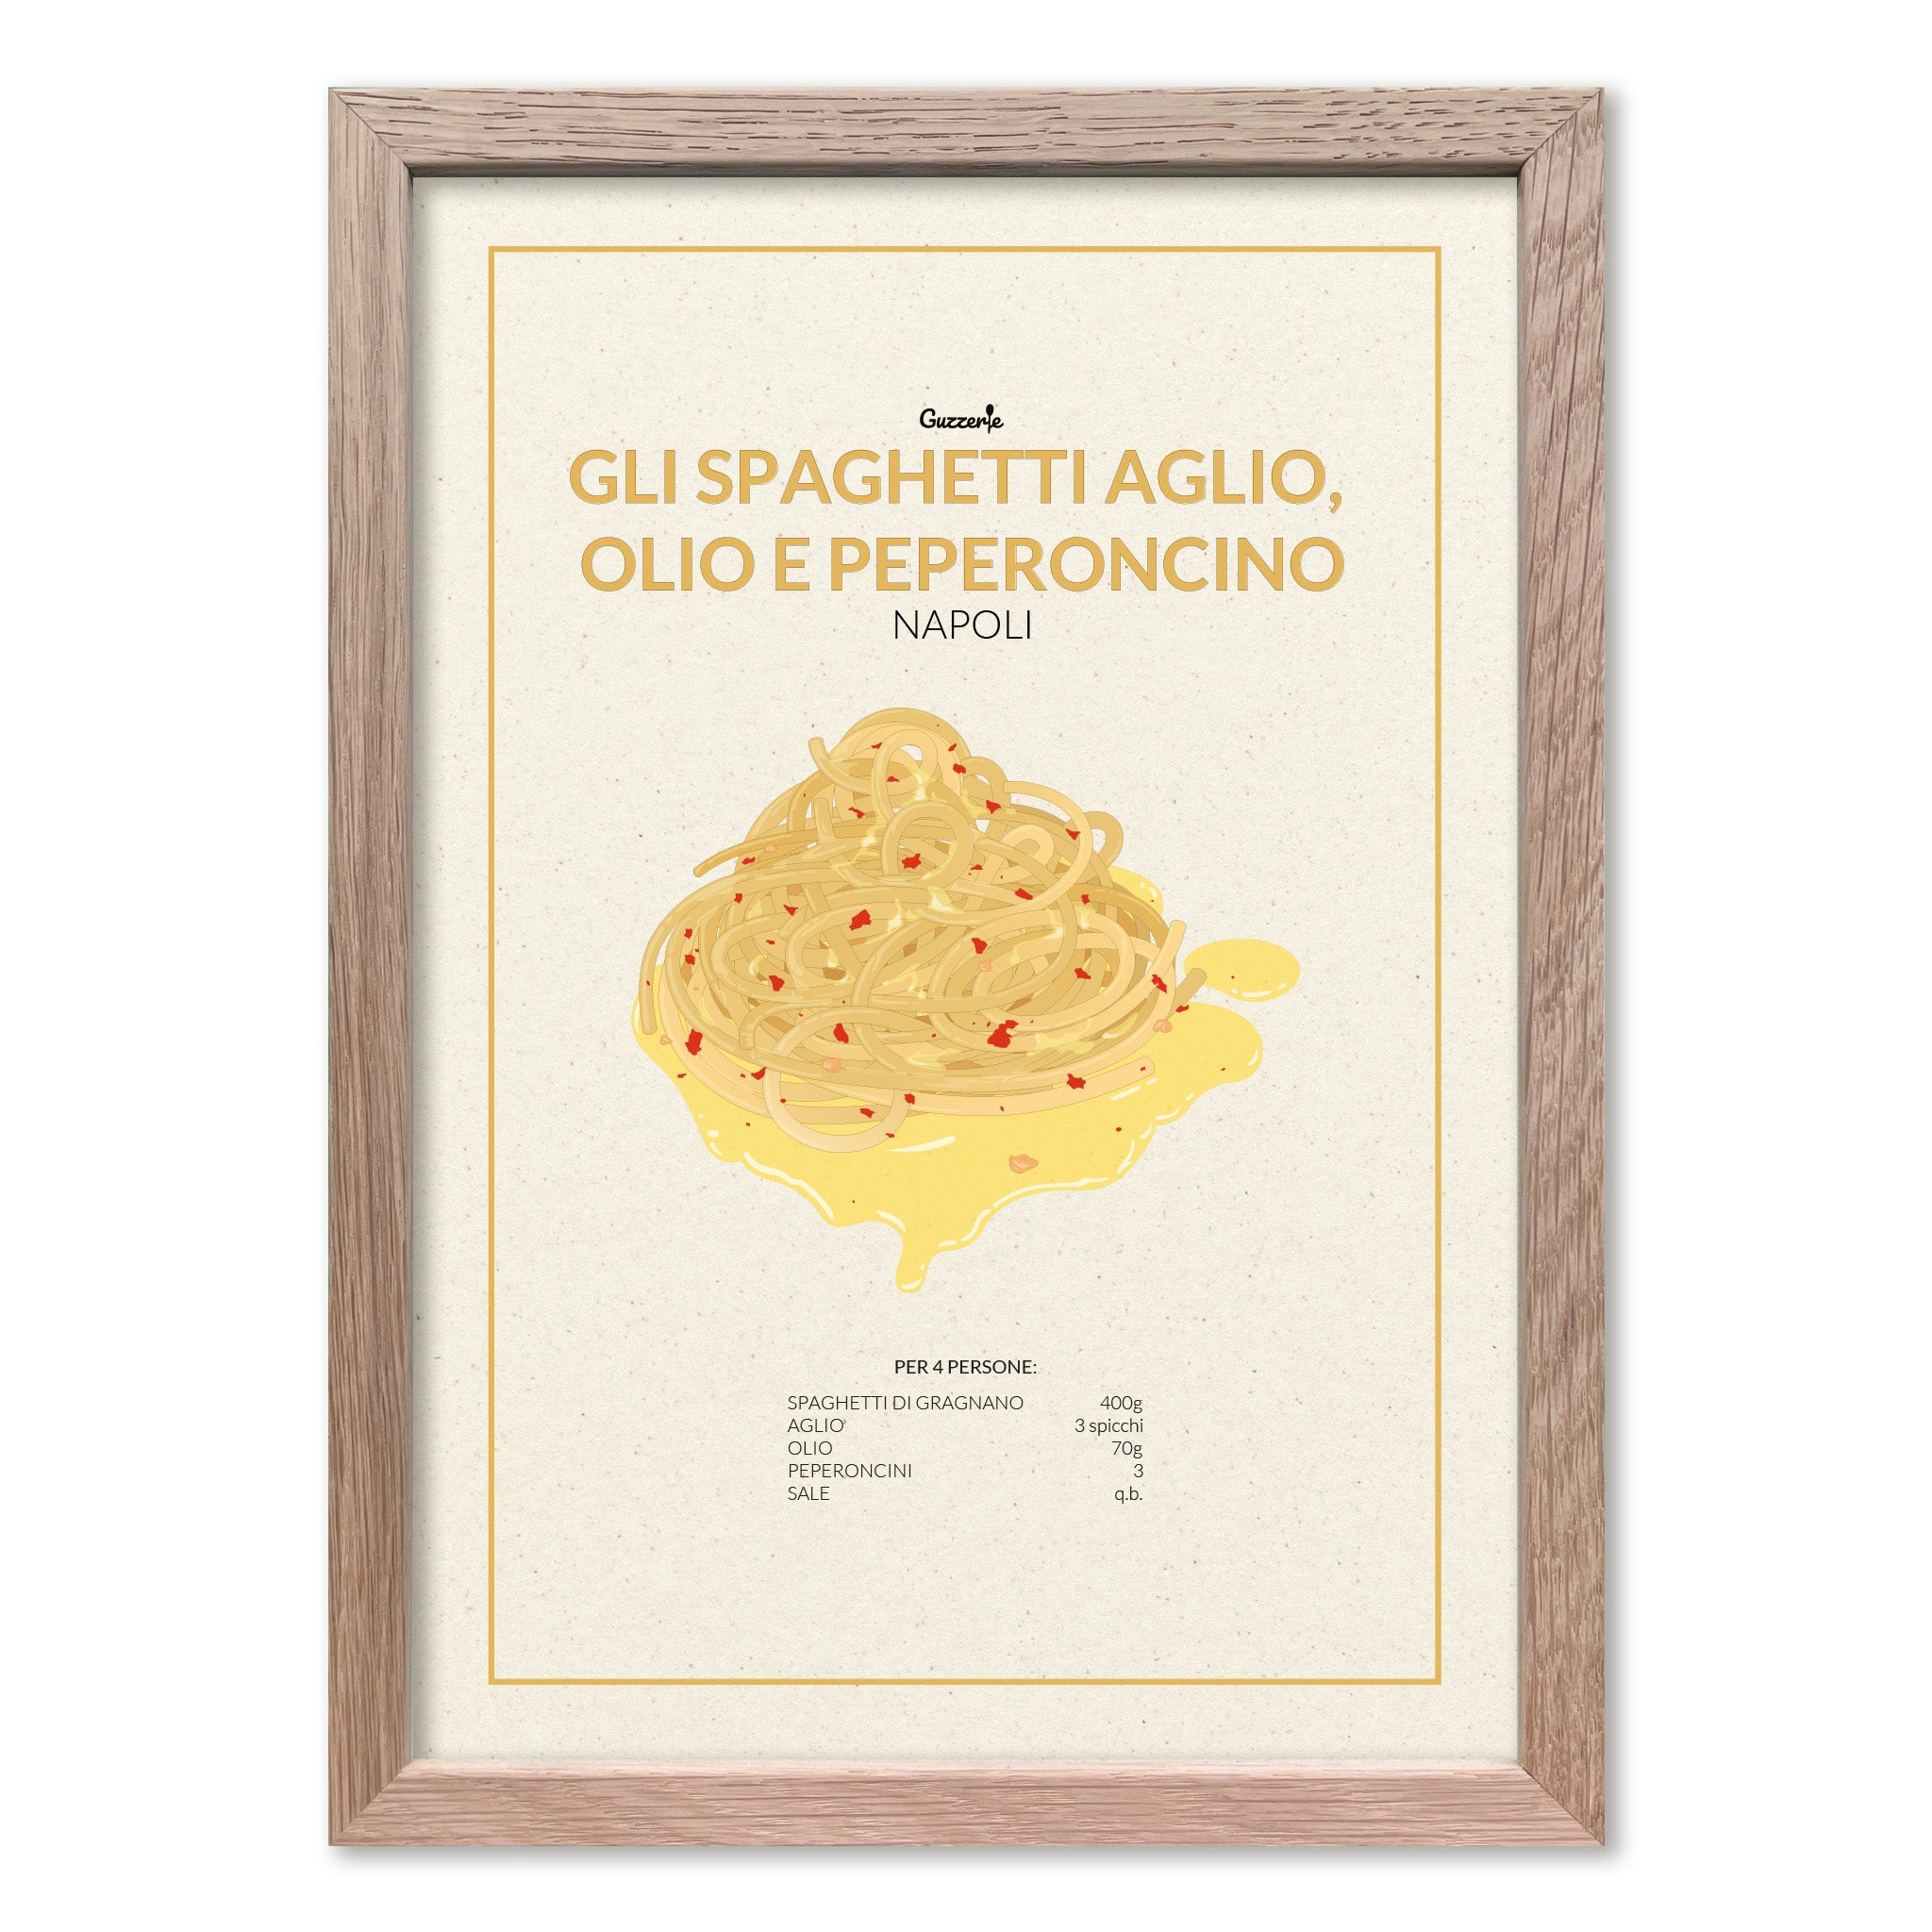 Iconic Poster of Spaghetti Aglio, Olio e Peperoncino | Guzzerie